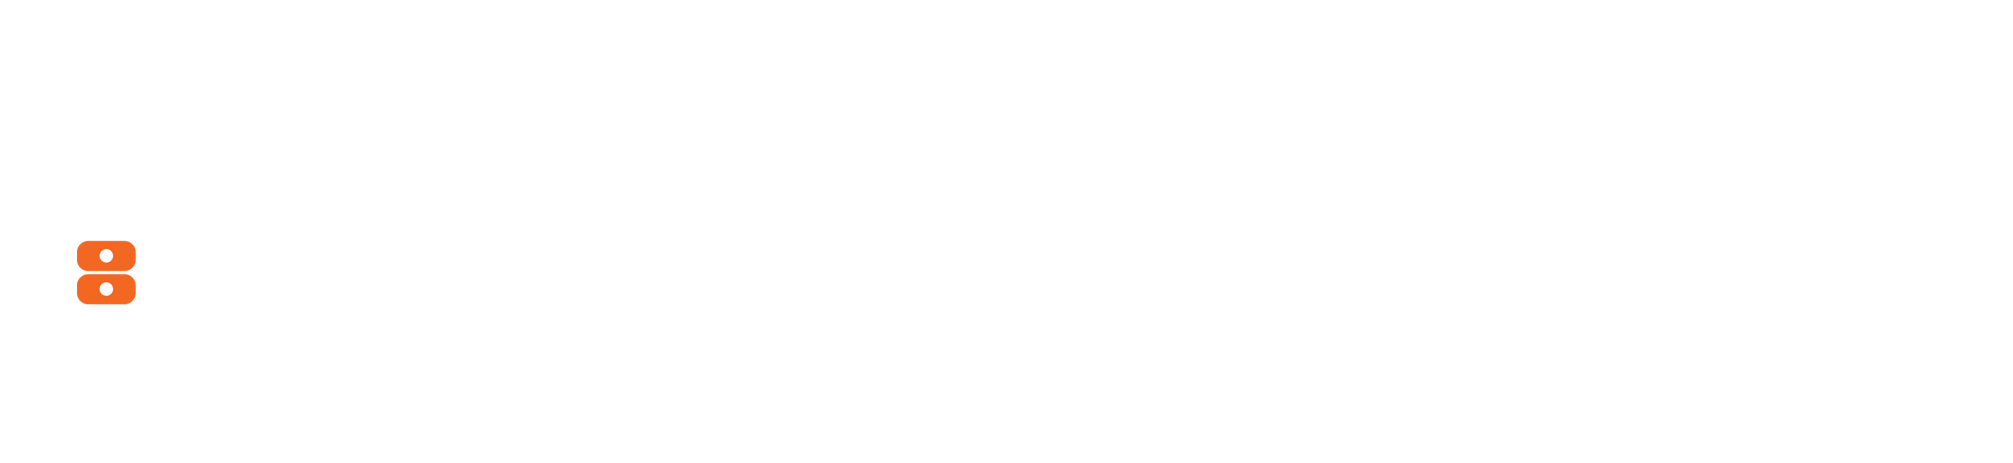 slider forside logo